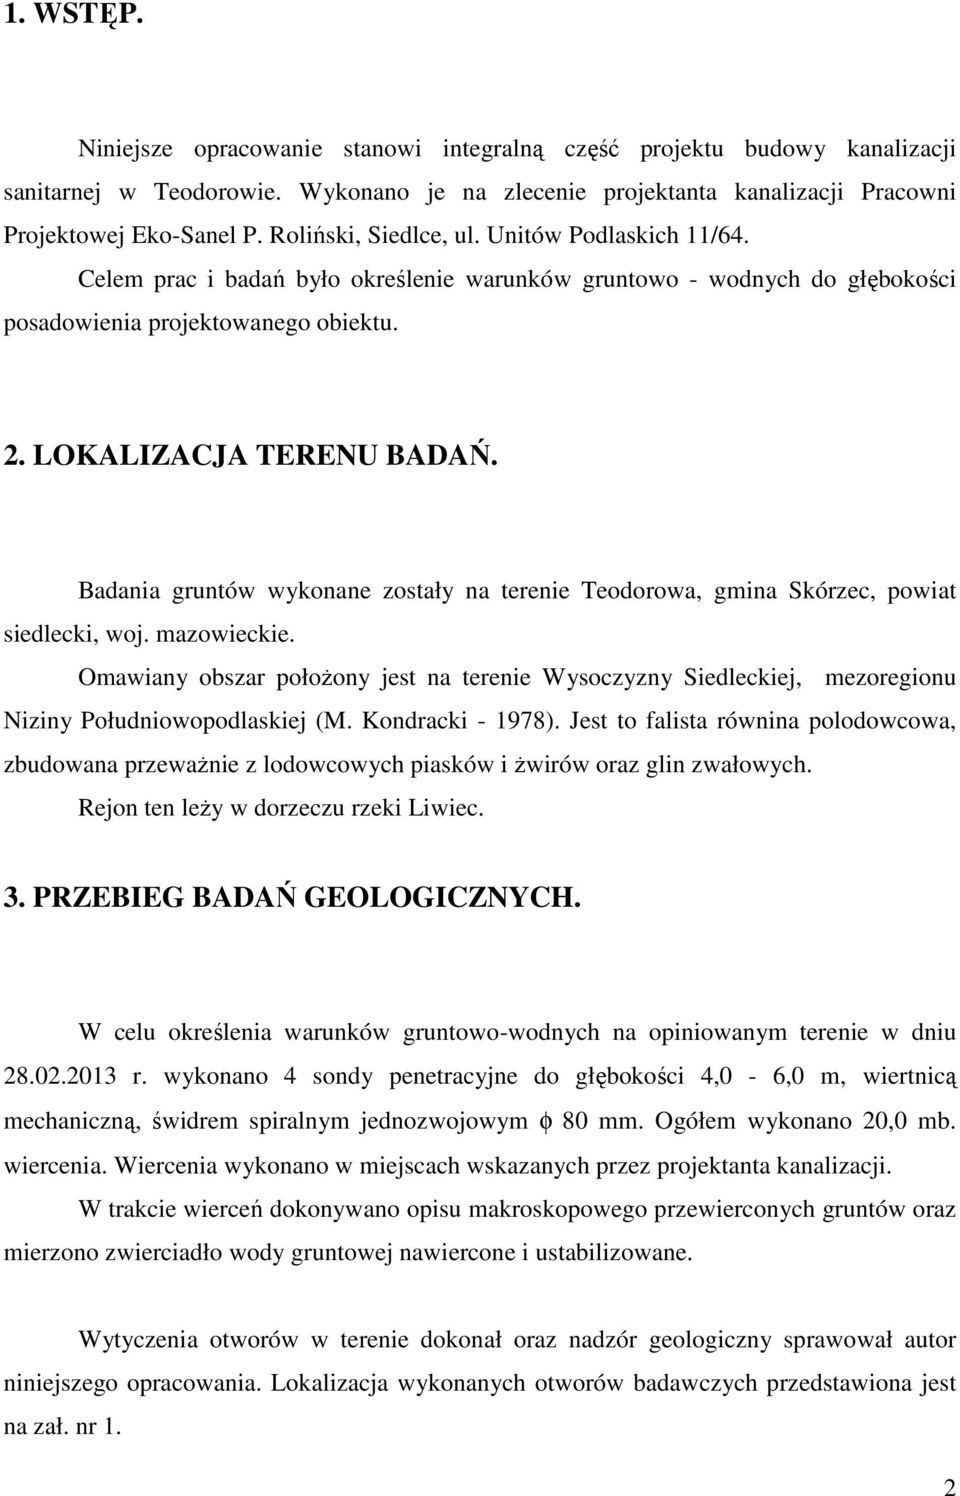 Badania gruntó ykonane zostały na terenie Teodoroa, gmina Skórzec, poiat siedlecki, oj. mazoieckie.